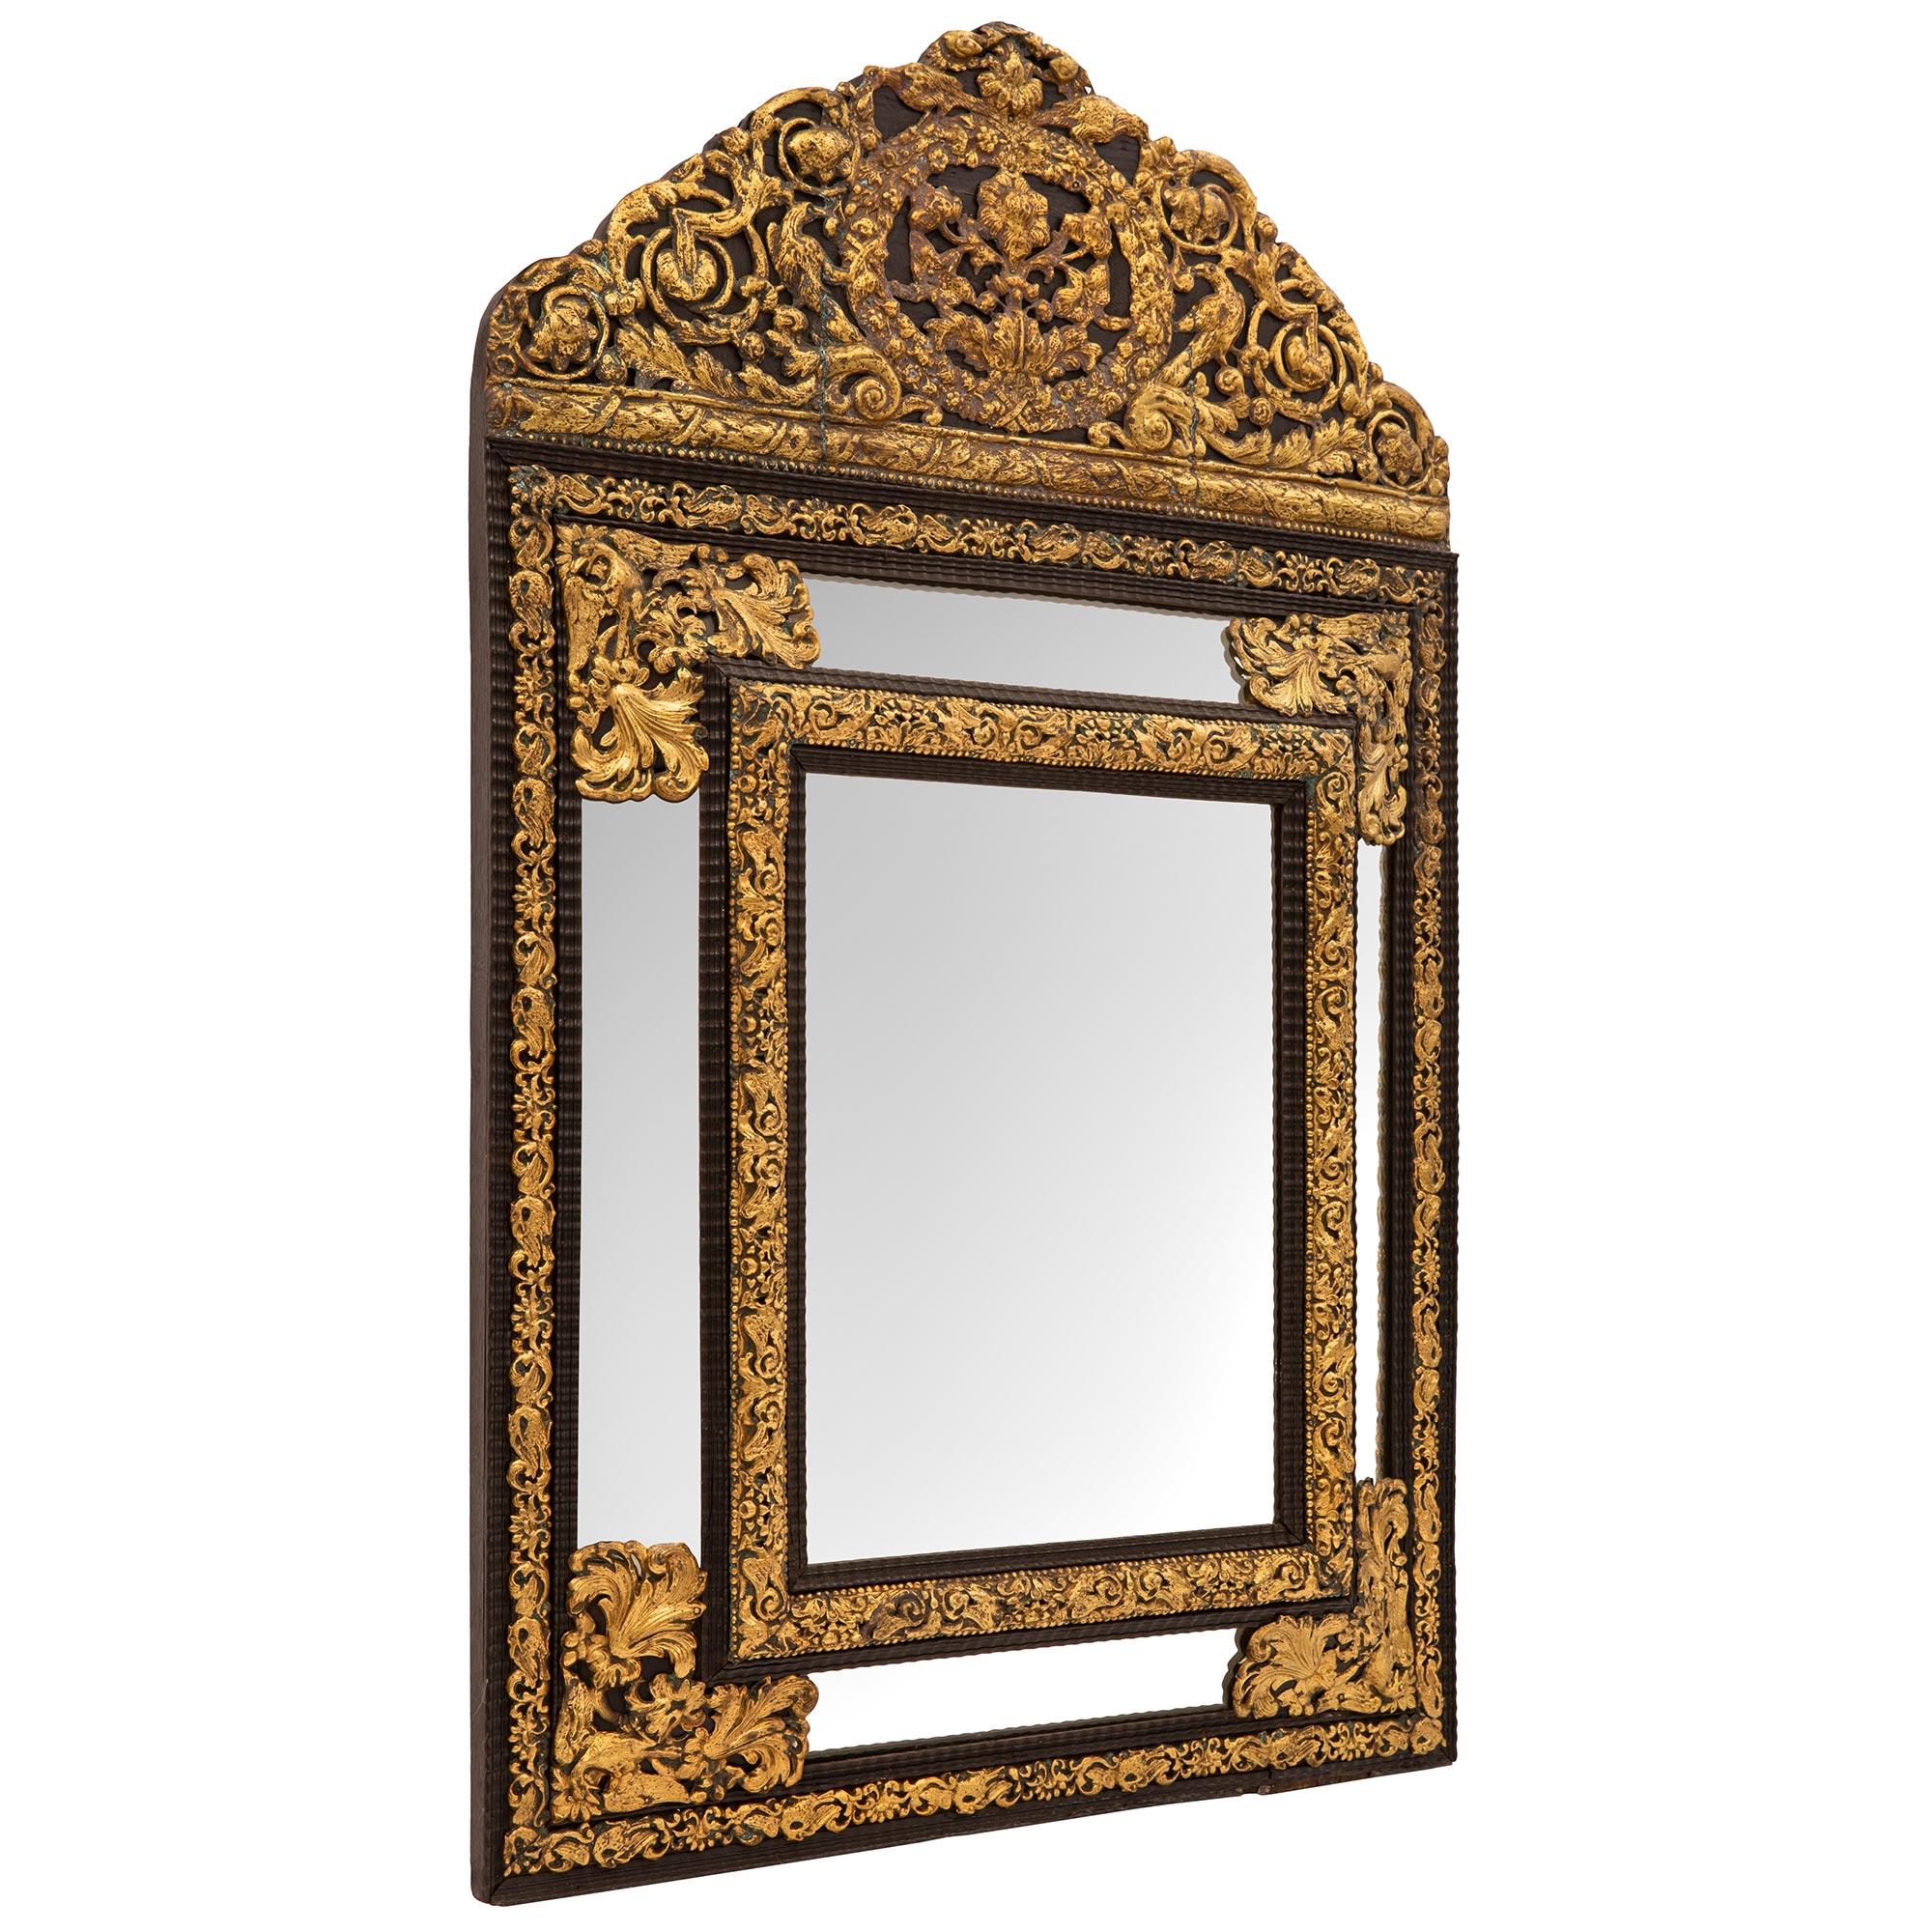 Un très beau miroir à double cadre en ébène et métal doré du 19e siècle. Le miroir a conservé toutes ses plaques d'origine, la plaque centrale étant entourée d'une bordure d'ébène tachetée avec un motif en forme de vague et une impressionnante bande